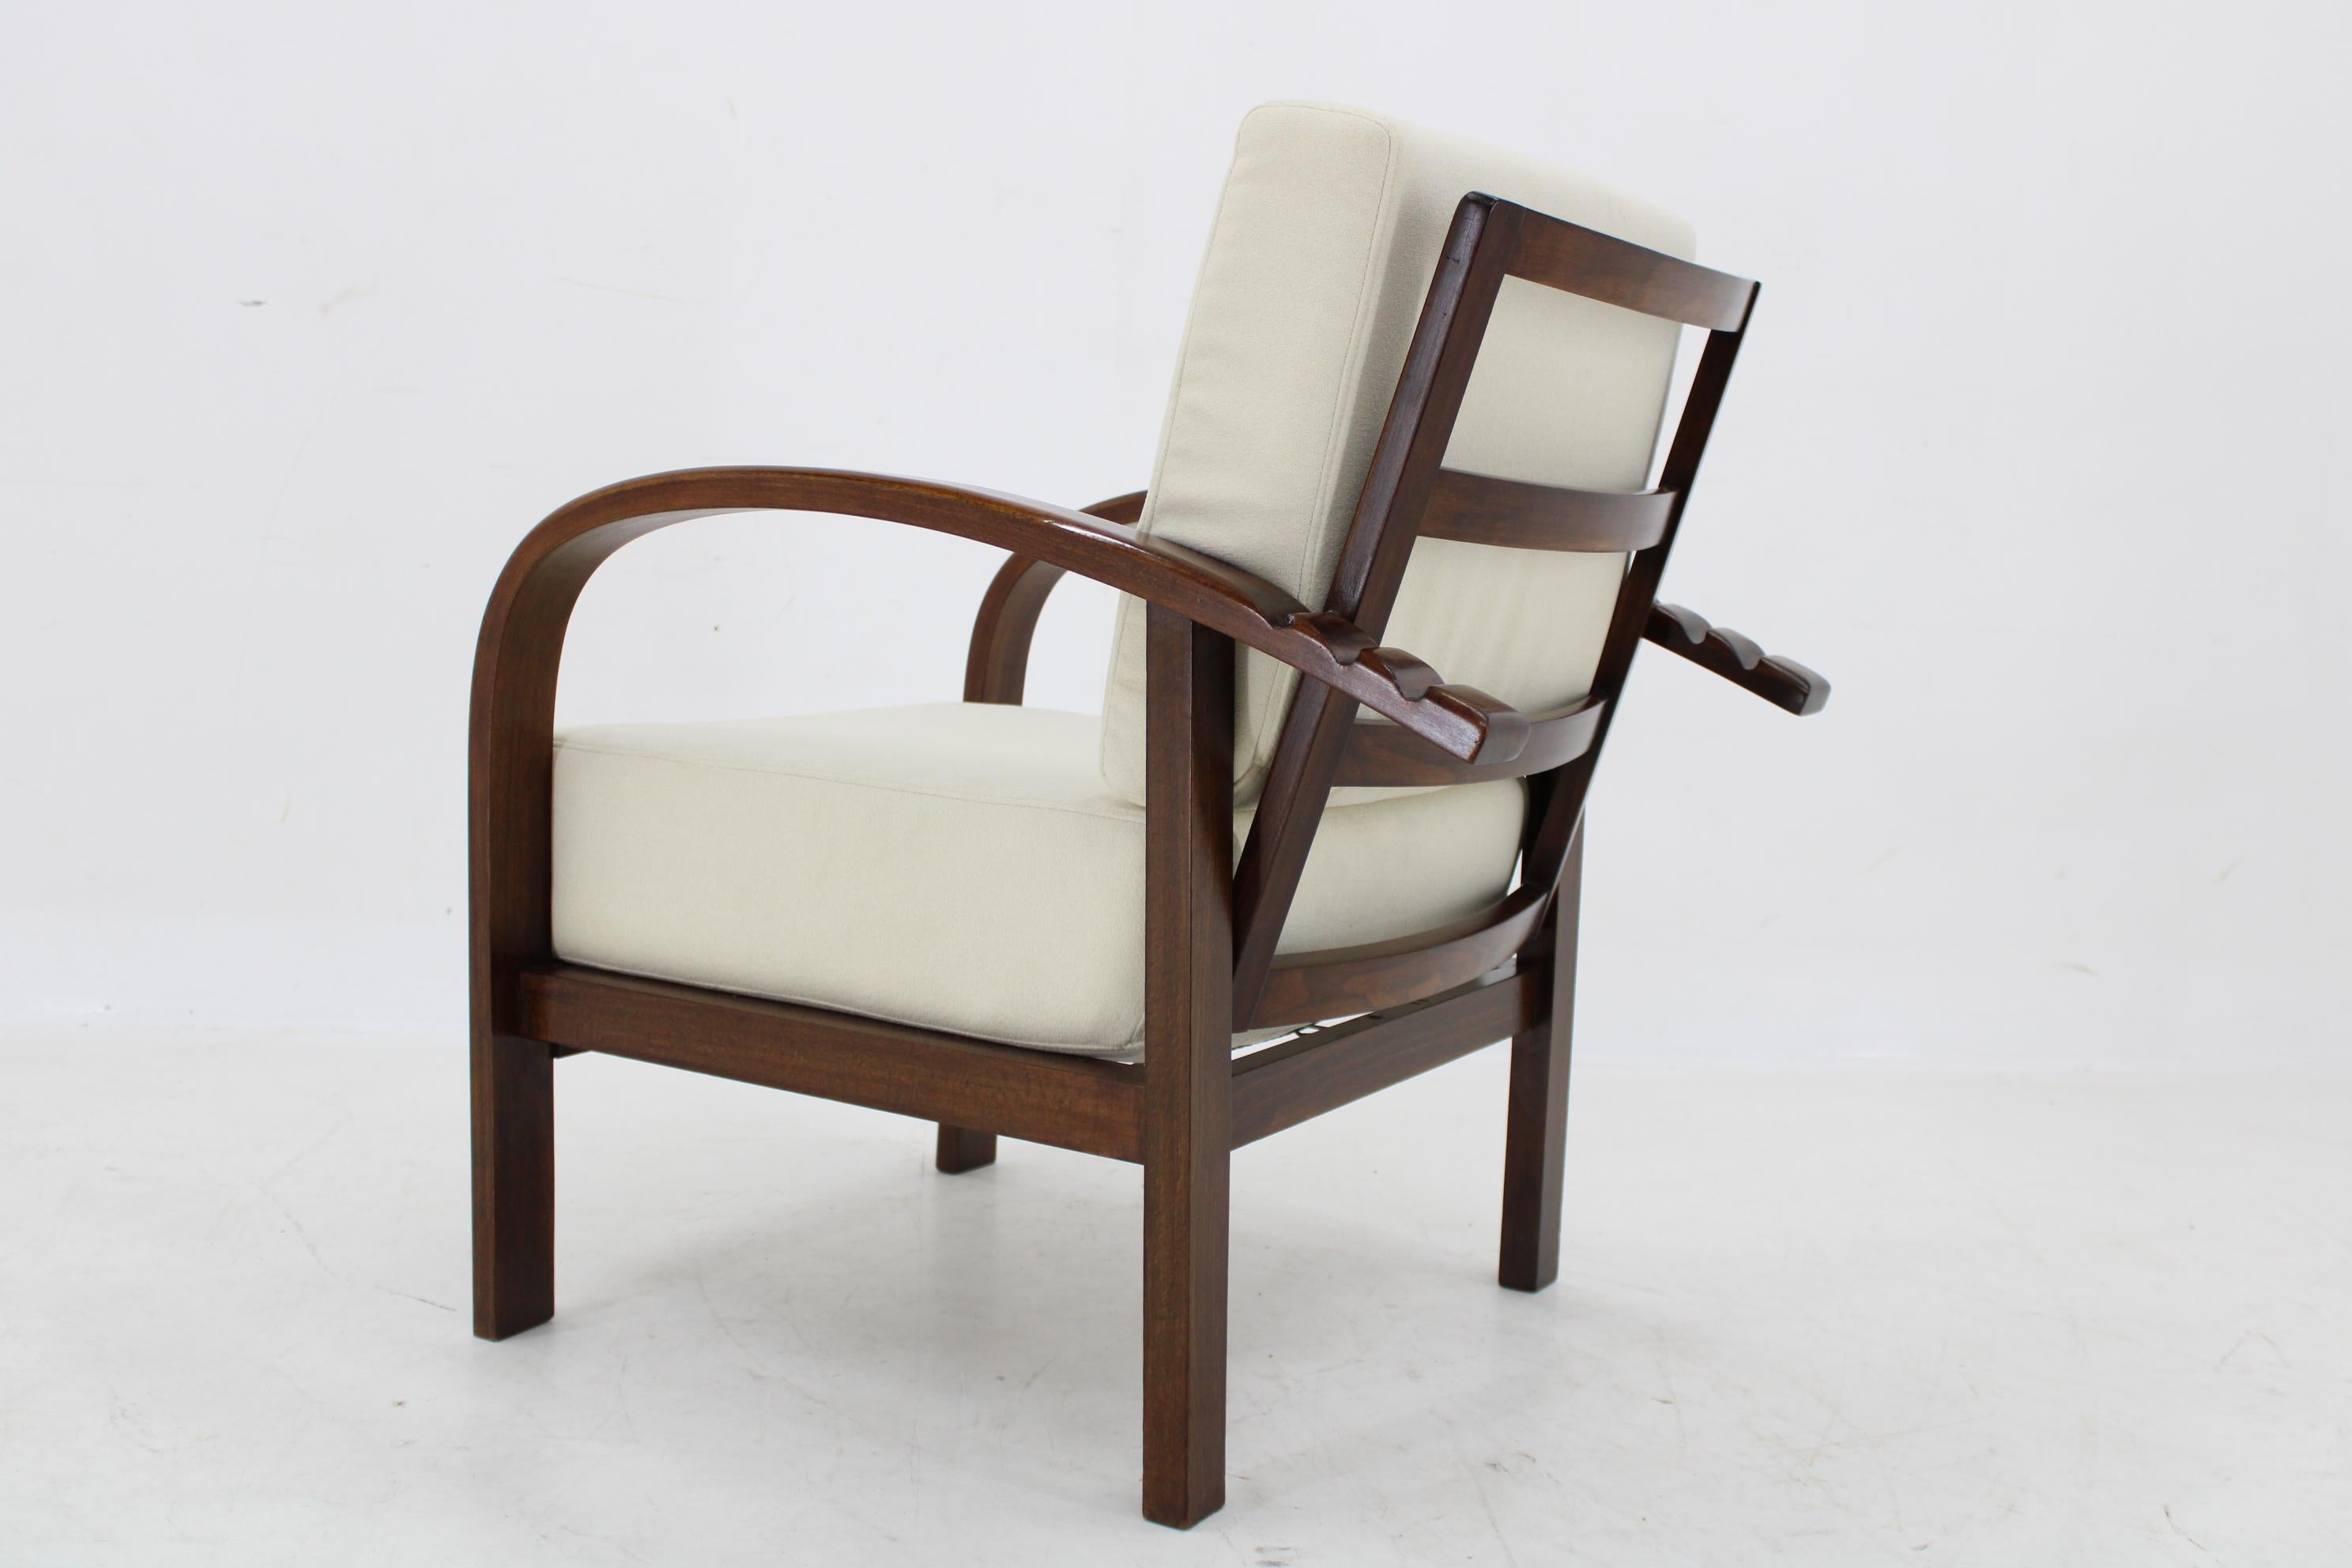 1930s Restored Art Deco Adjustable Armchair by Fischel, Czechoslovakia For Sale 4